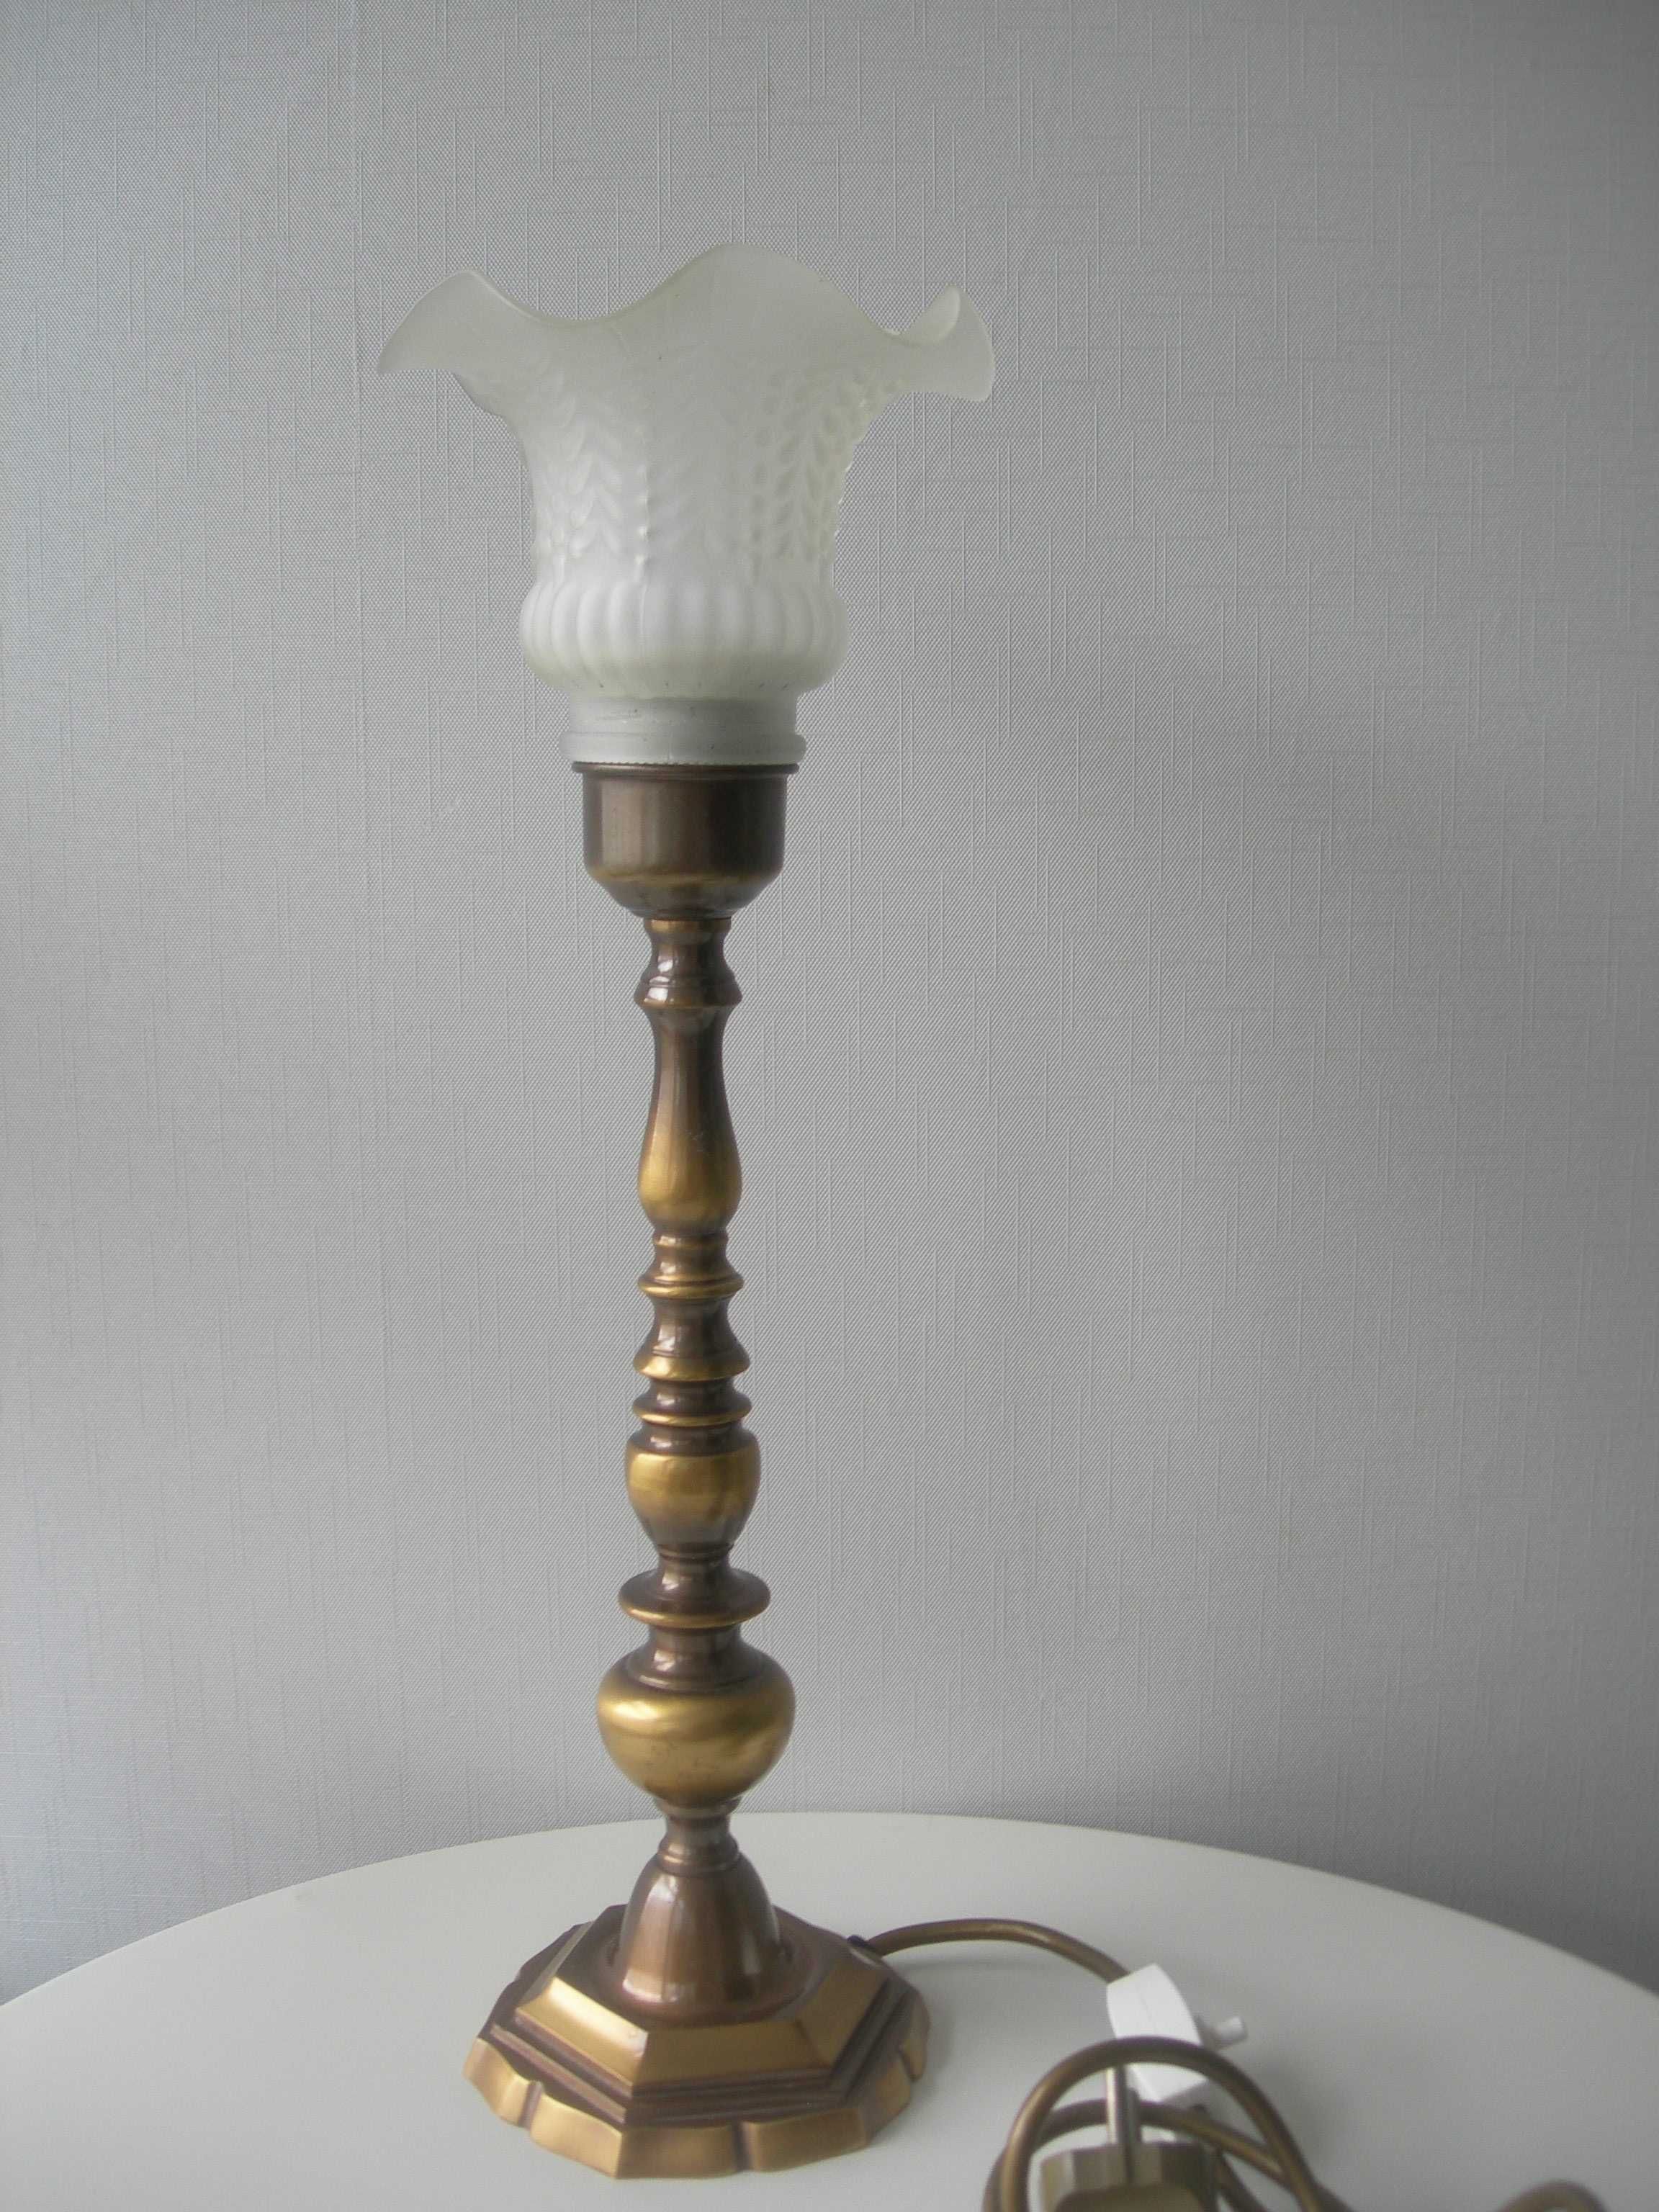 Лампа, светильник, бронза, бронзовая, Дания